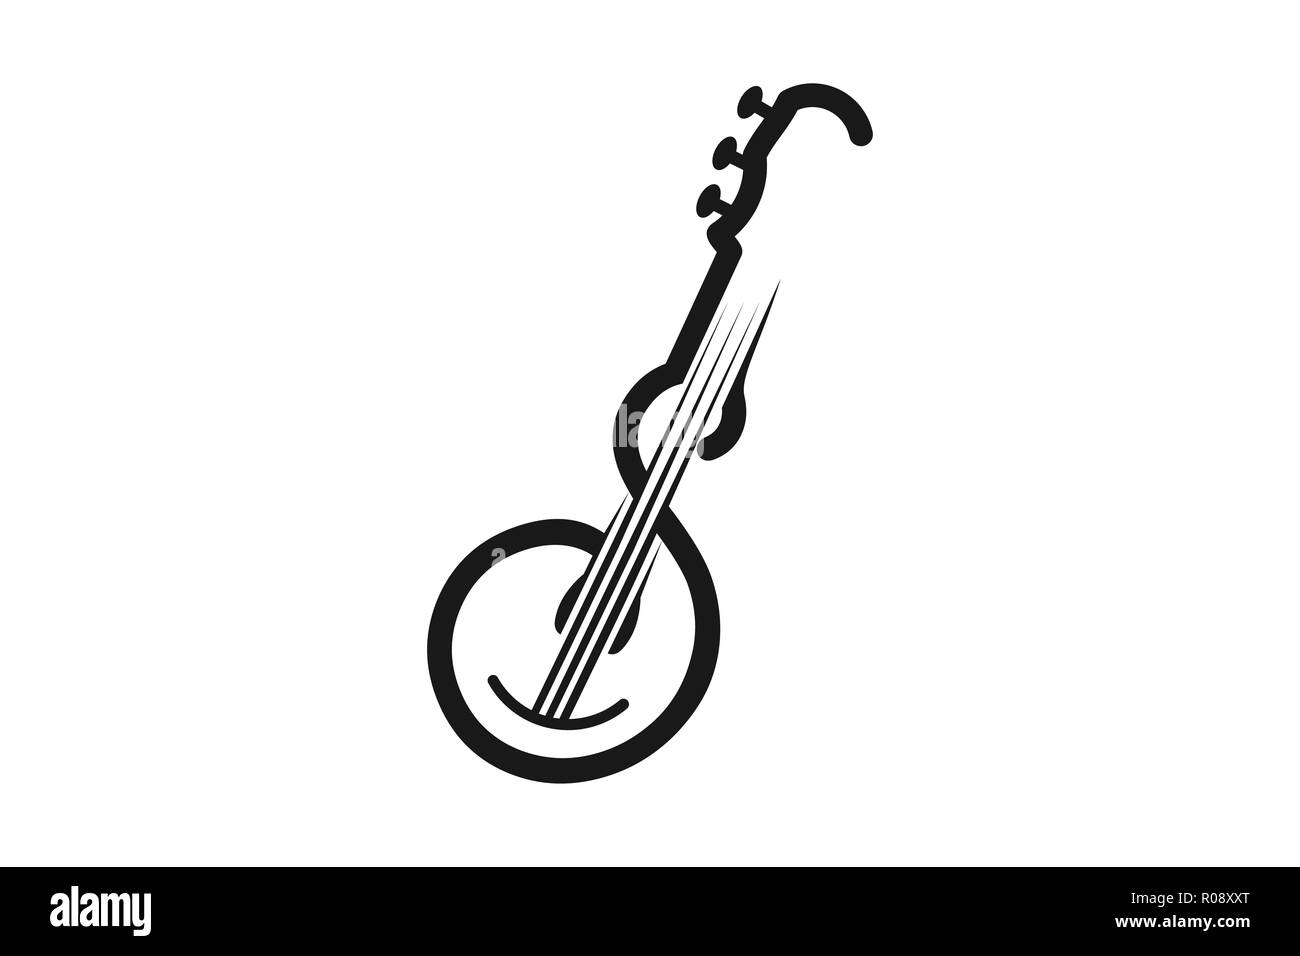 Lettre S guitare instrument de musique et l'inspiration de conception de logo Illustration de Vecteur